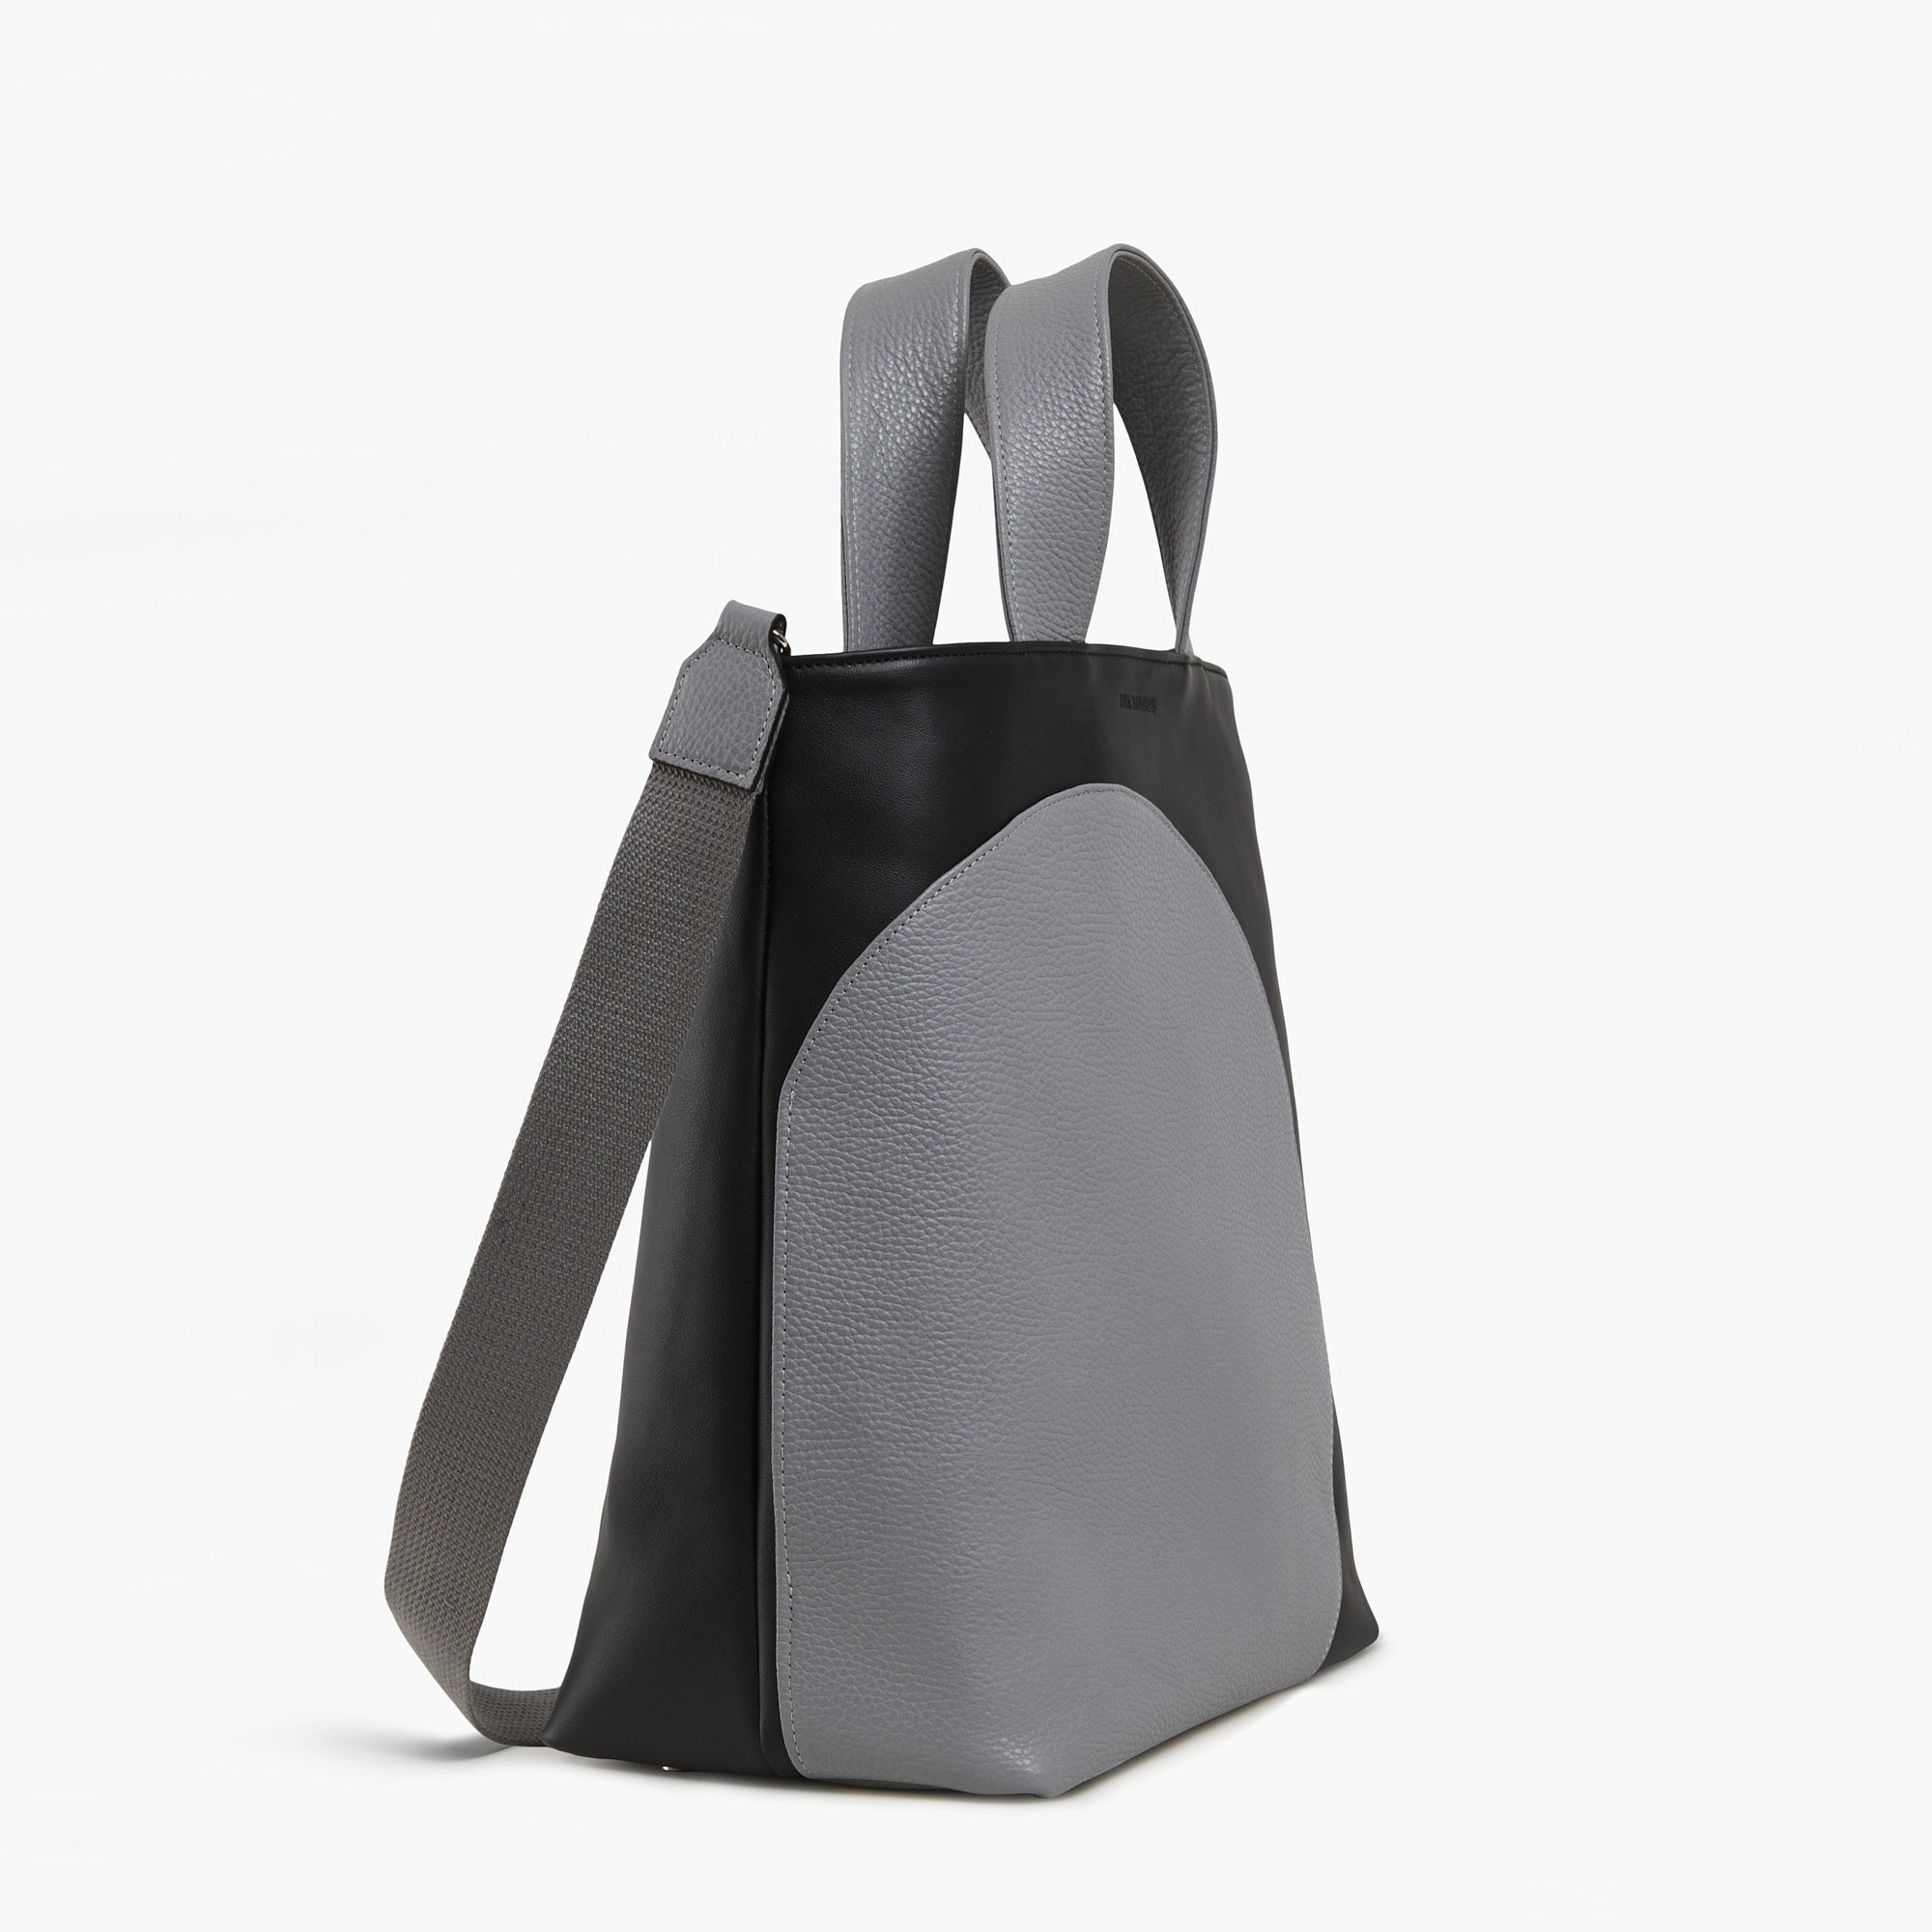 Leather handbag in black-gray color